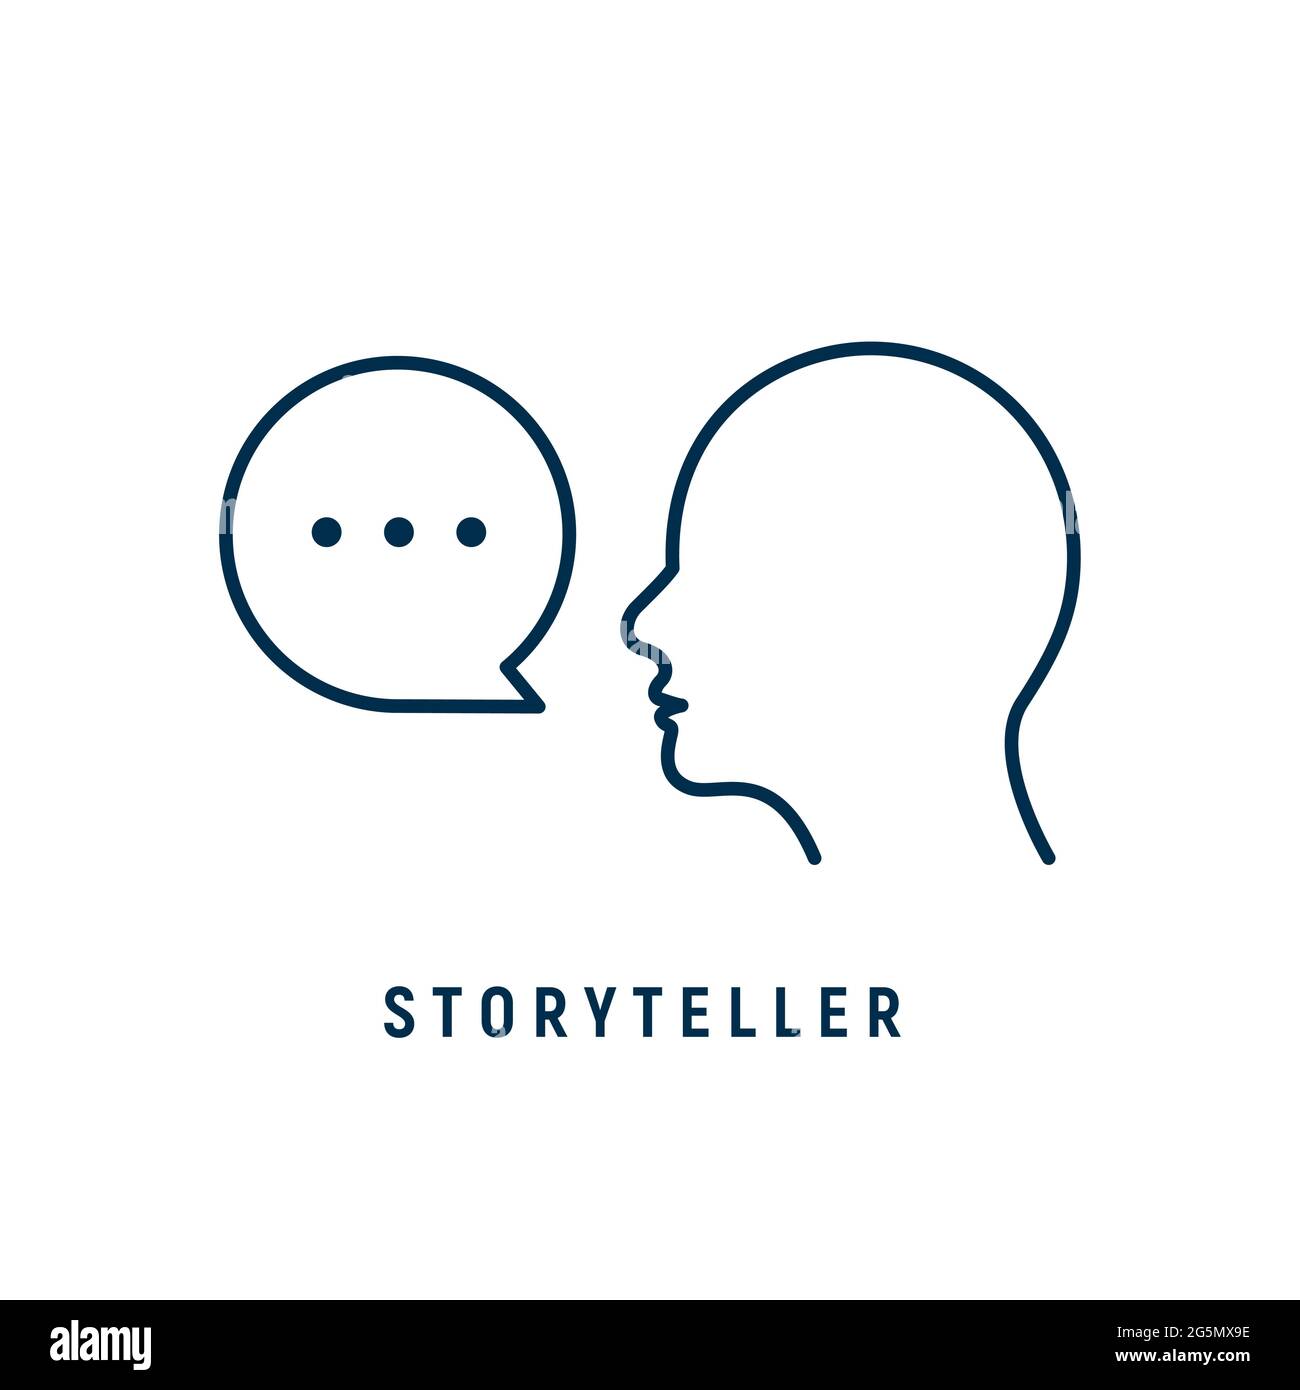 Storyteller brand digital logo icon. Story teller illustration badge vector icon Stock Vector